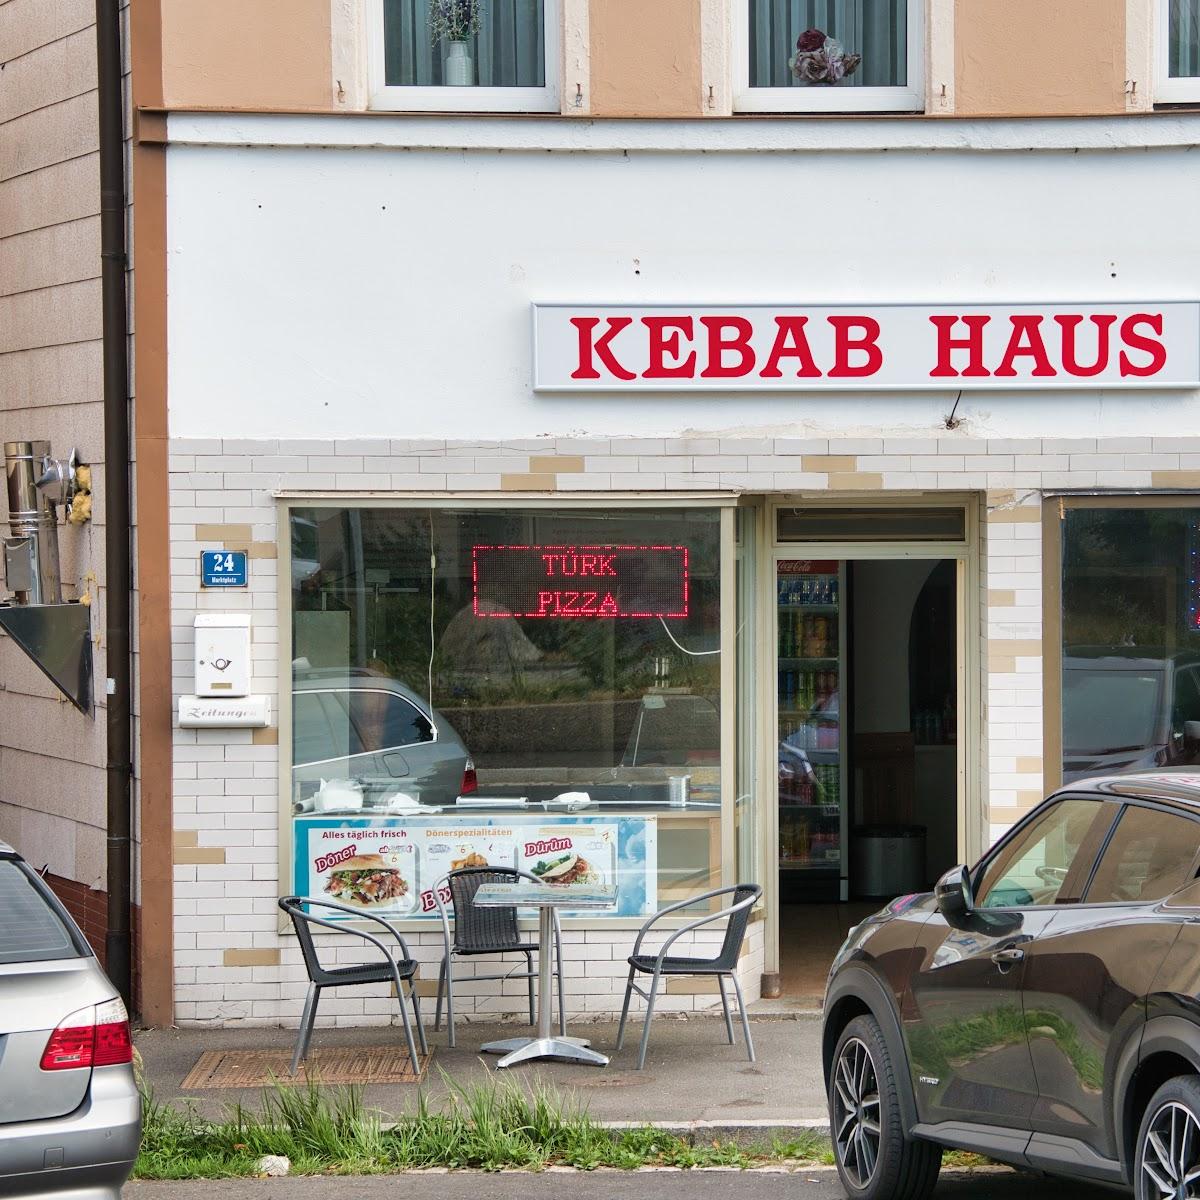 Restaurant "Kebab haus" in Marktleuthen